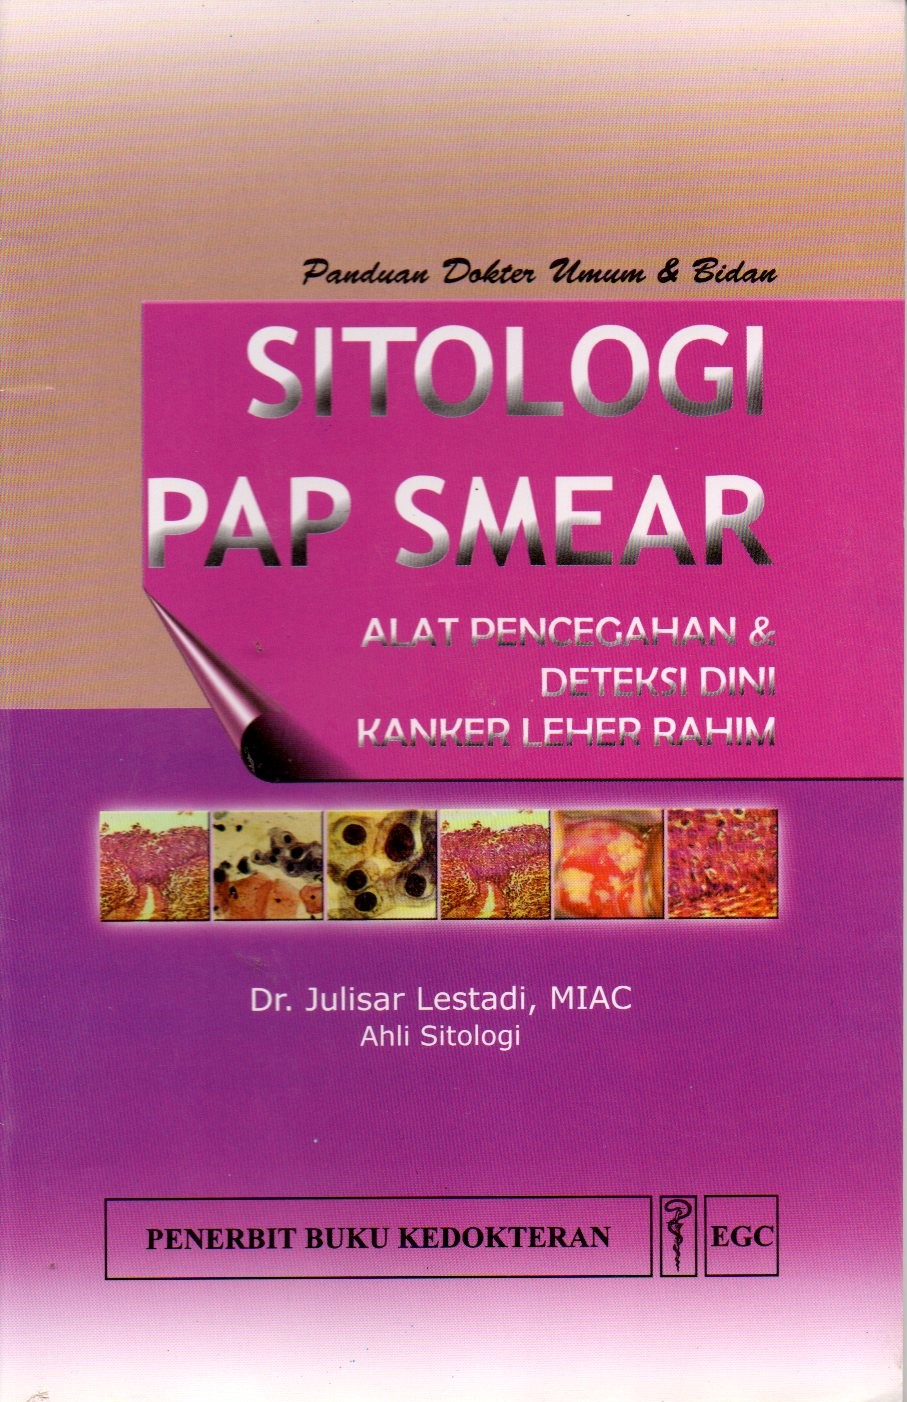 Sitologi PAP Smear : Alat pencegahan & deteksi dini kanker leher rahim